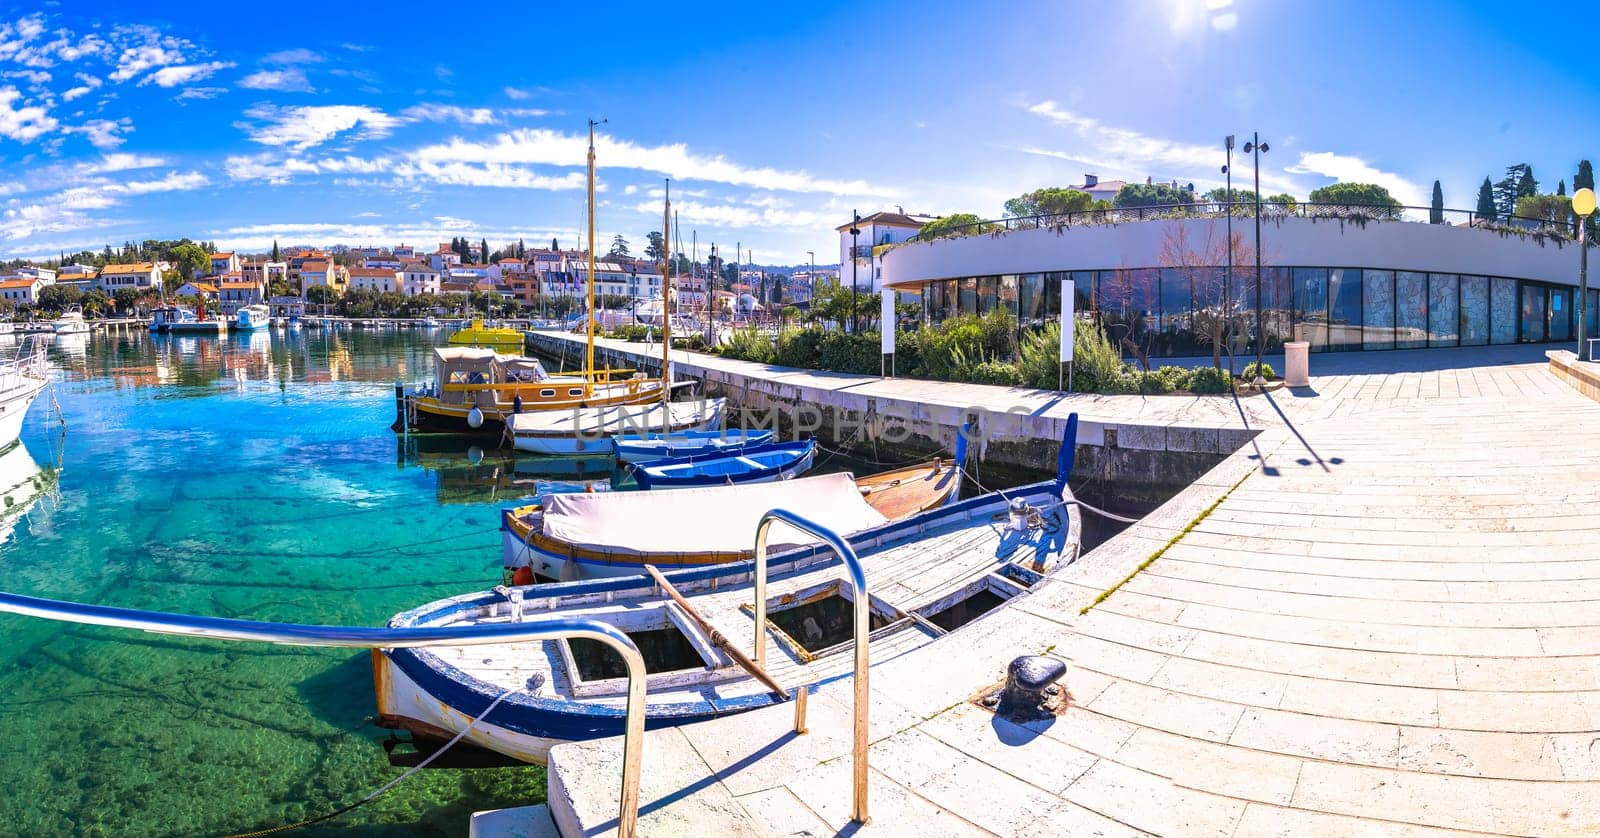 Krk. Town of Malinska harbor and waterfront view, Krk island in Croatia